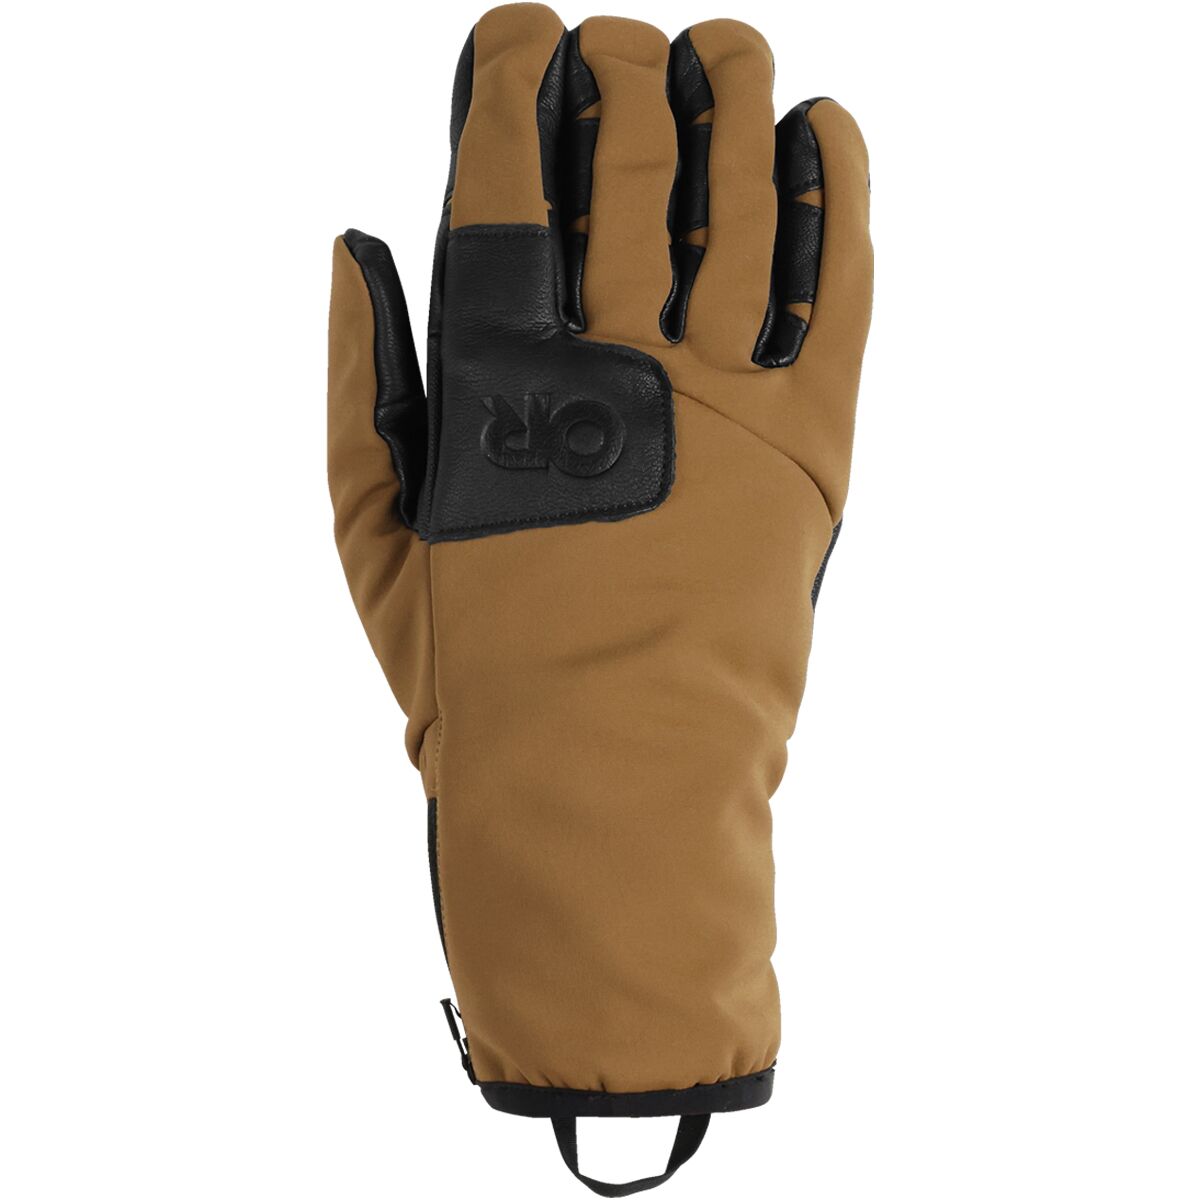 Outdoor Research StormTracker Sensor Glove - Men's Coyote